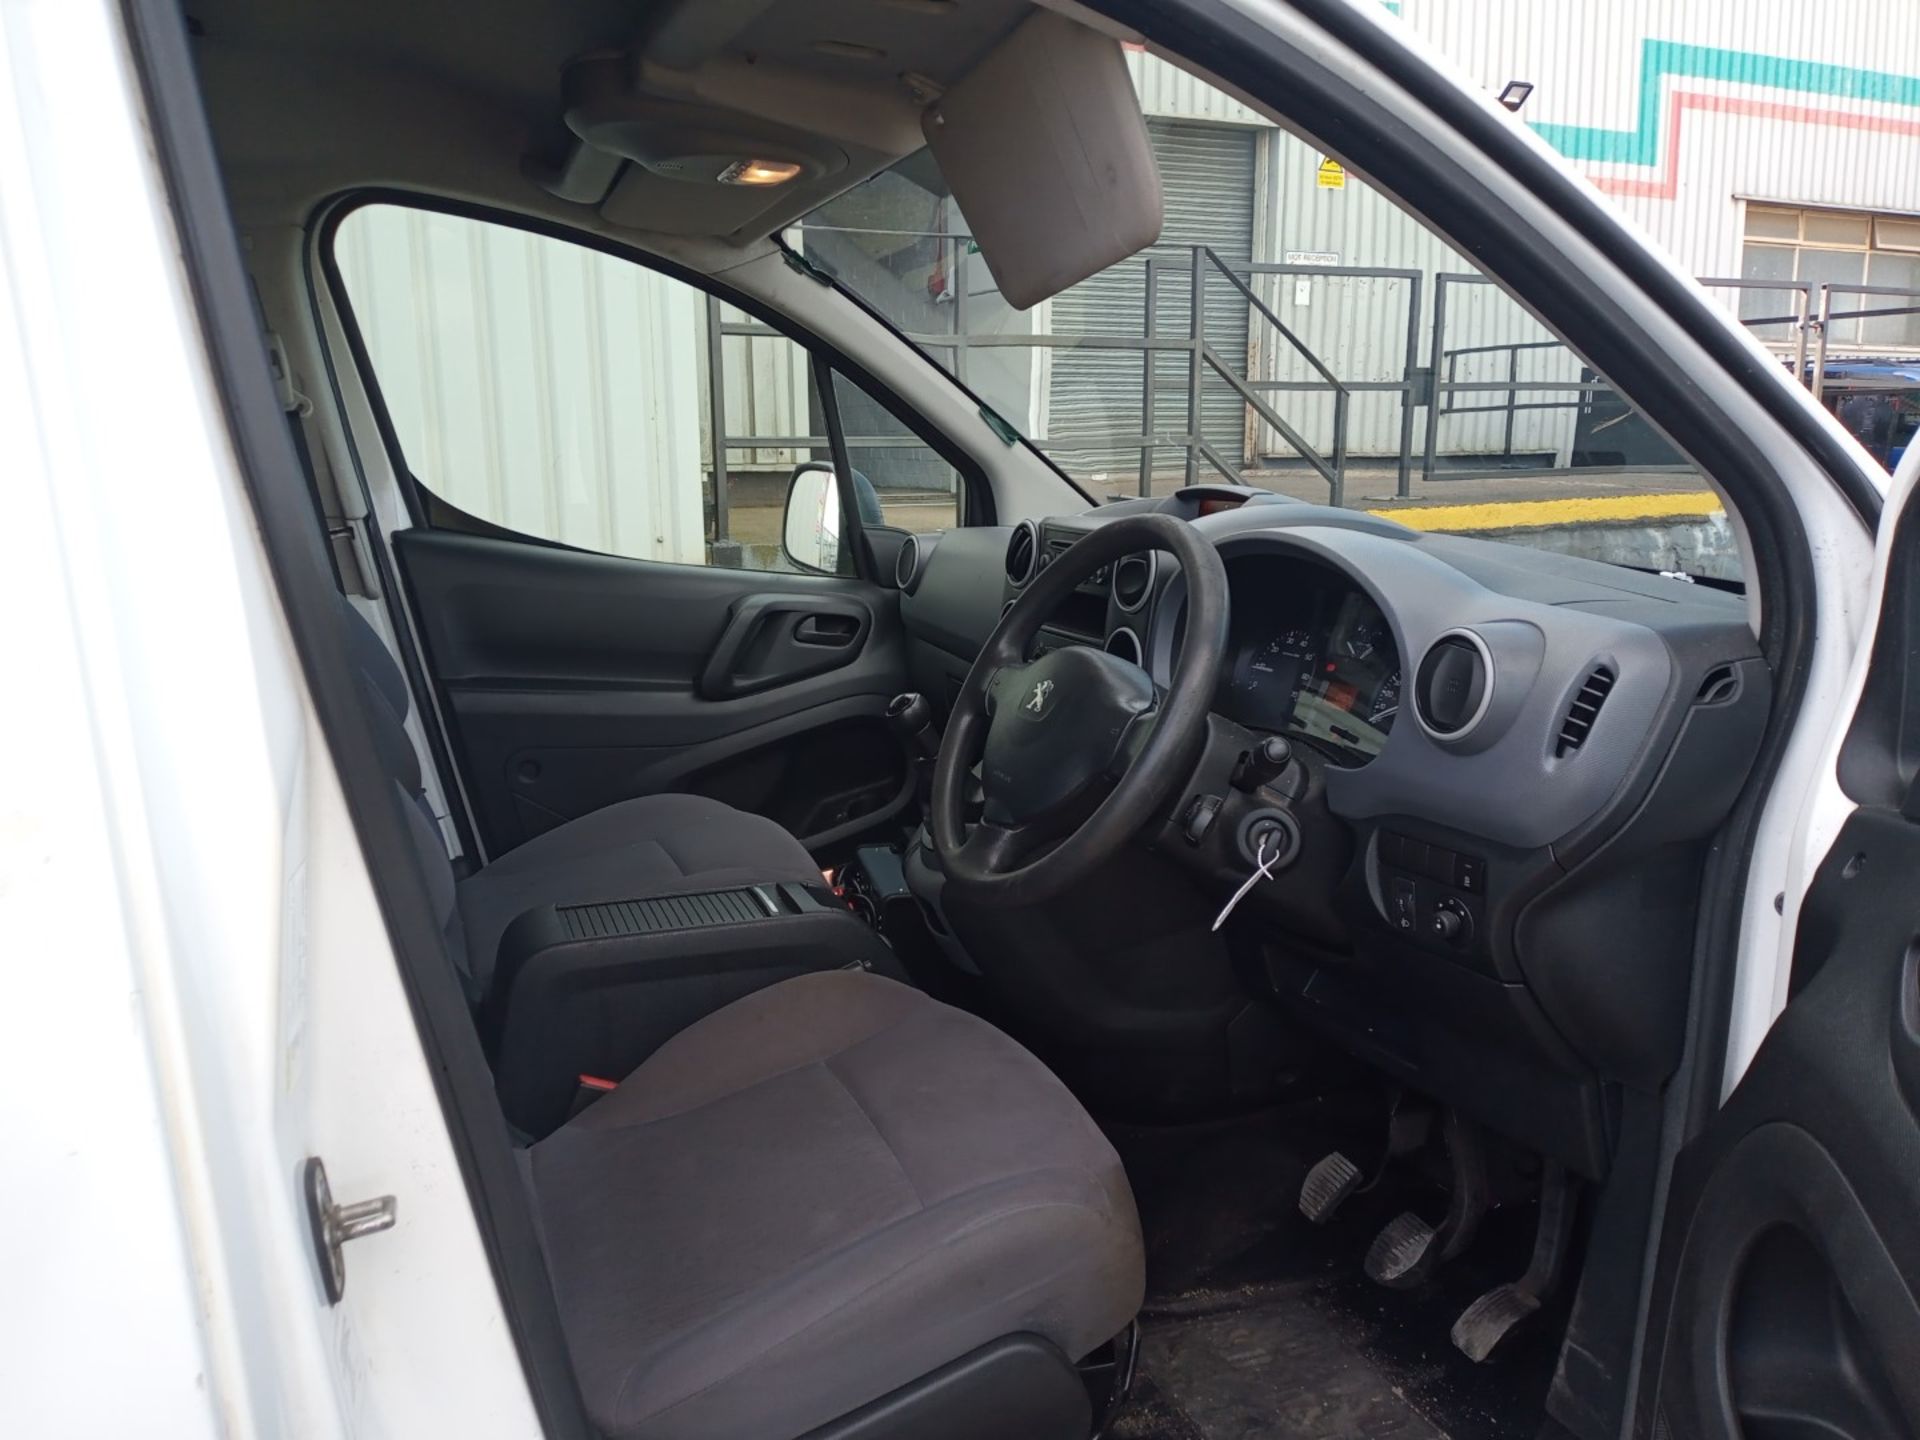 2016 Peugeot Partner L1 850 S 1.6 HDI 5 Door Van - Image 12 of 13